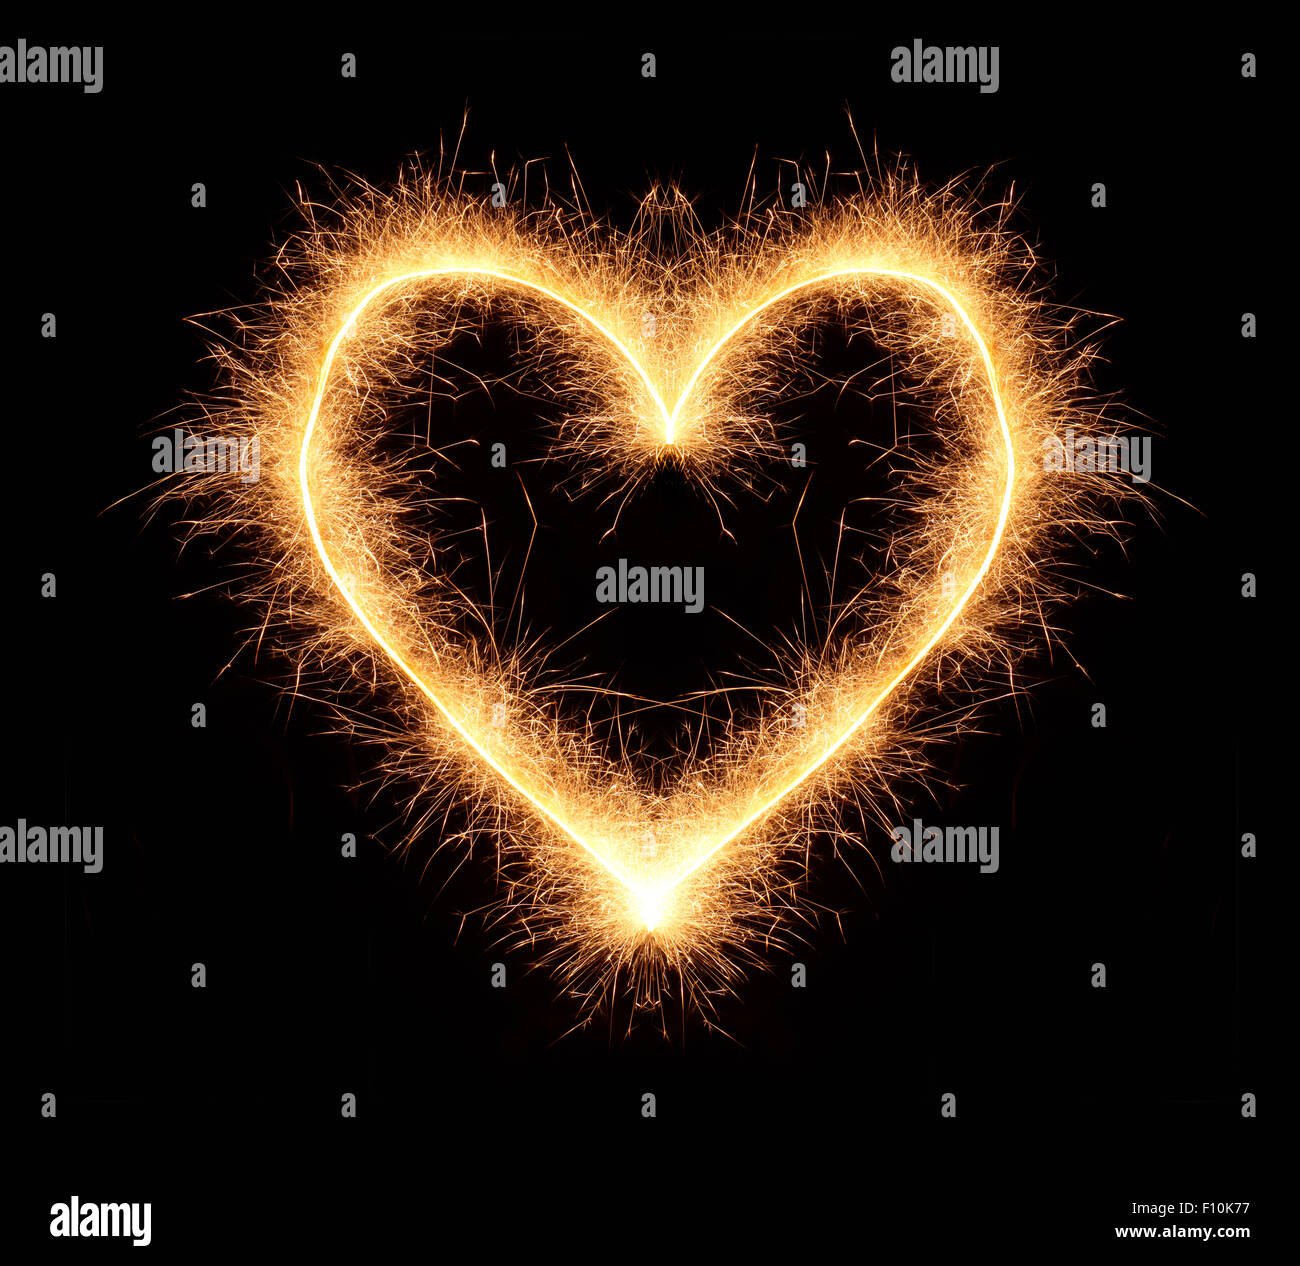 L'amour romantique coeur lumineux dessiné avec sparkles isolé sur fond noir Banque D'Images